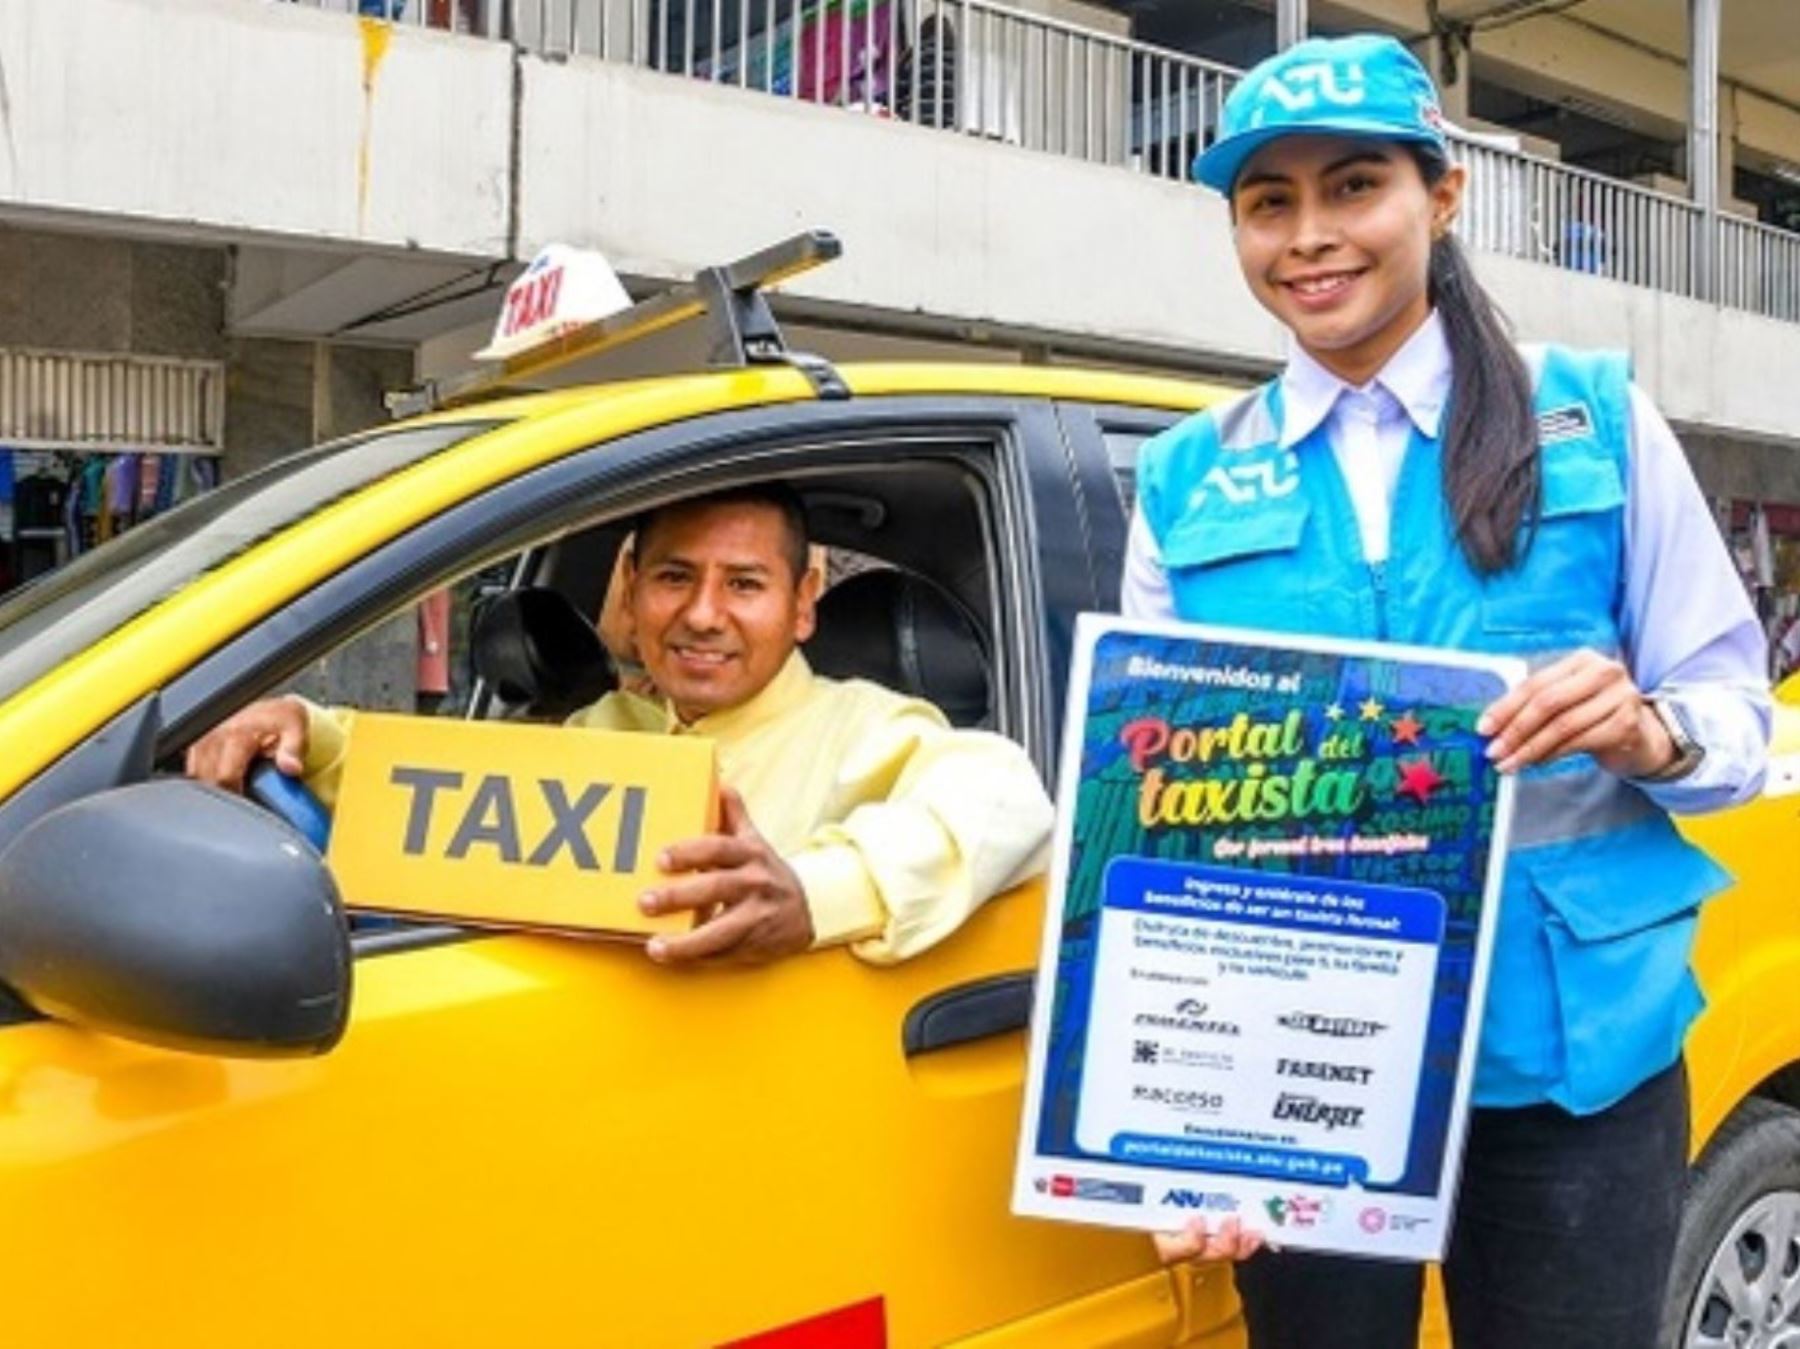 ATU recuerda a los conductores informales que ofrecen servicios de taxi que tienen beneficios para regularizar su situación.